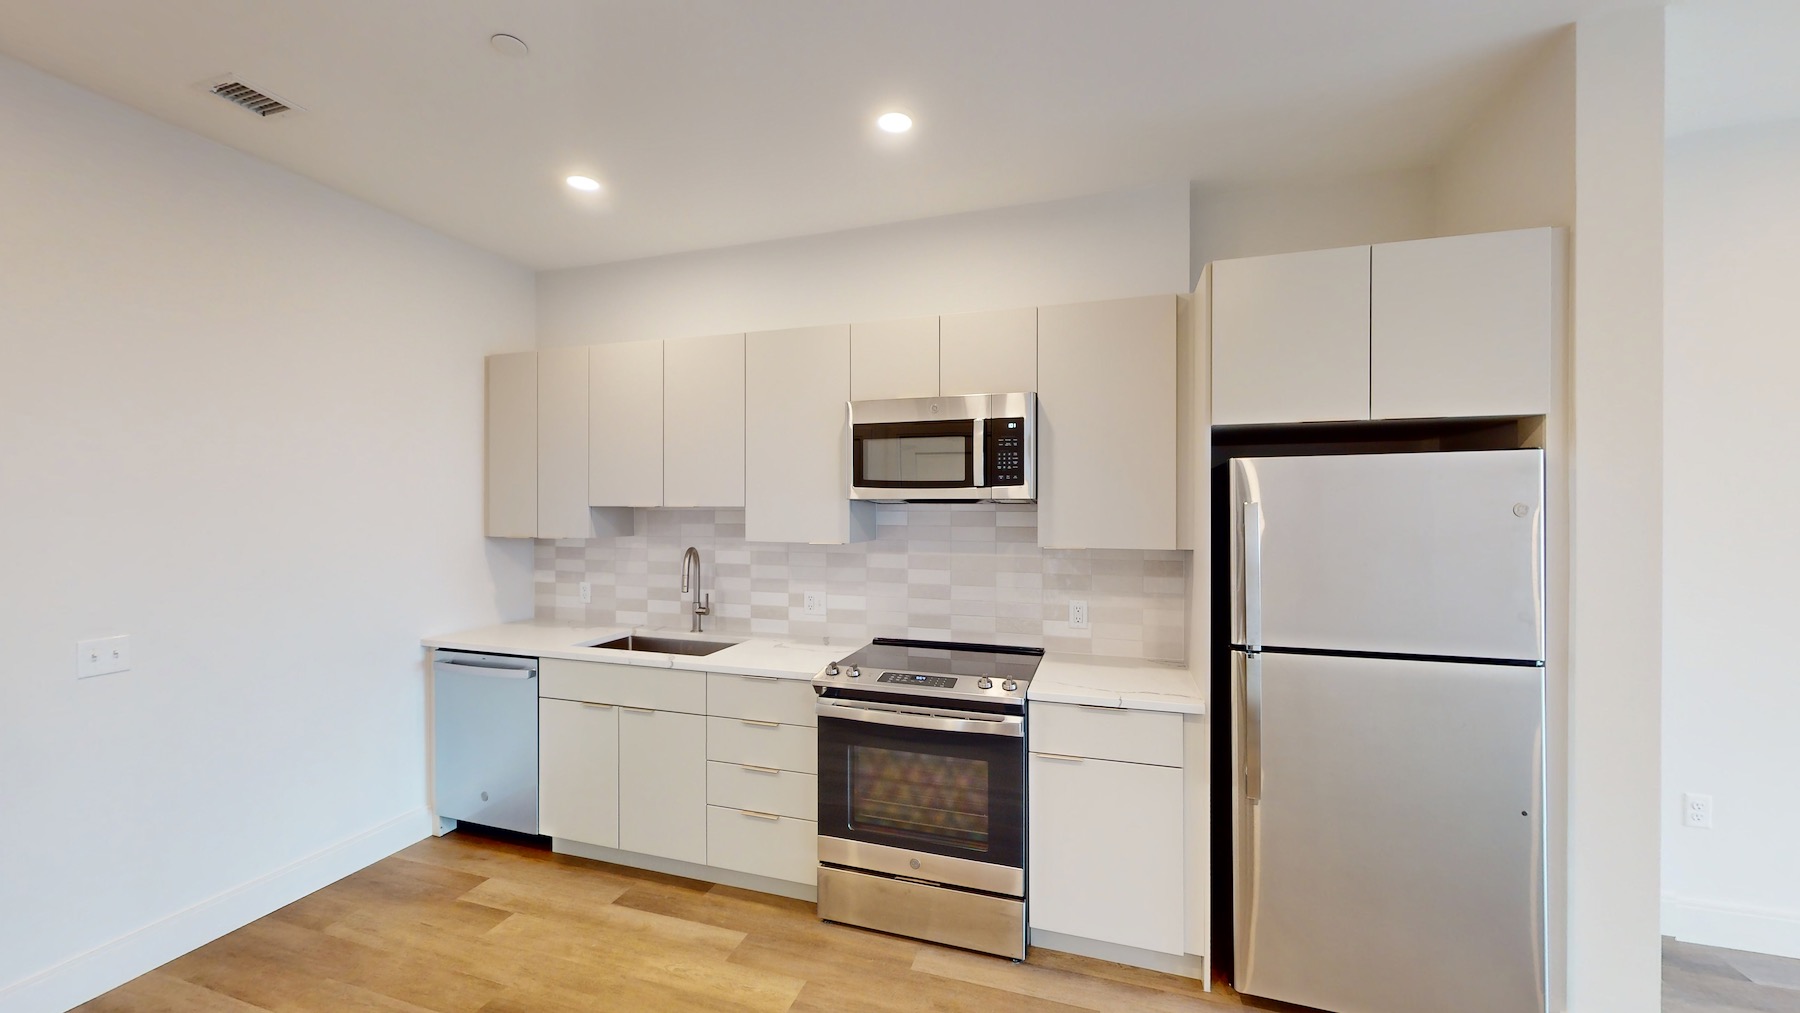 Photos of apartment on Linda Ln.,Boston MA 02125